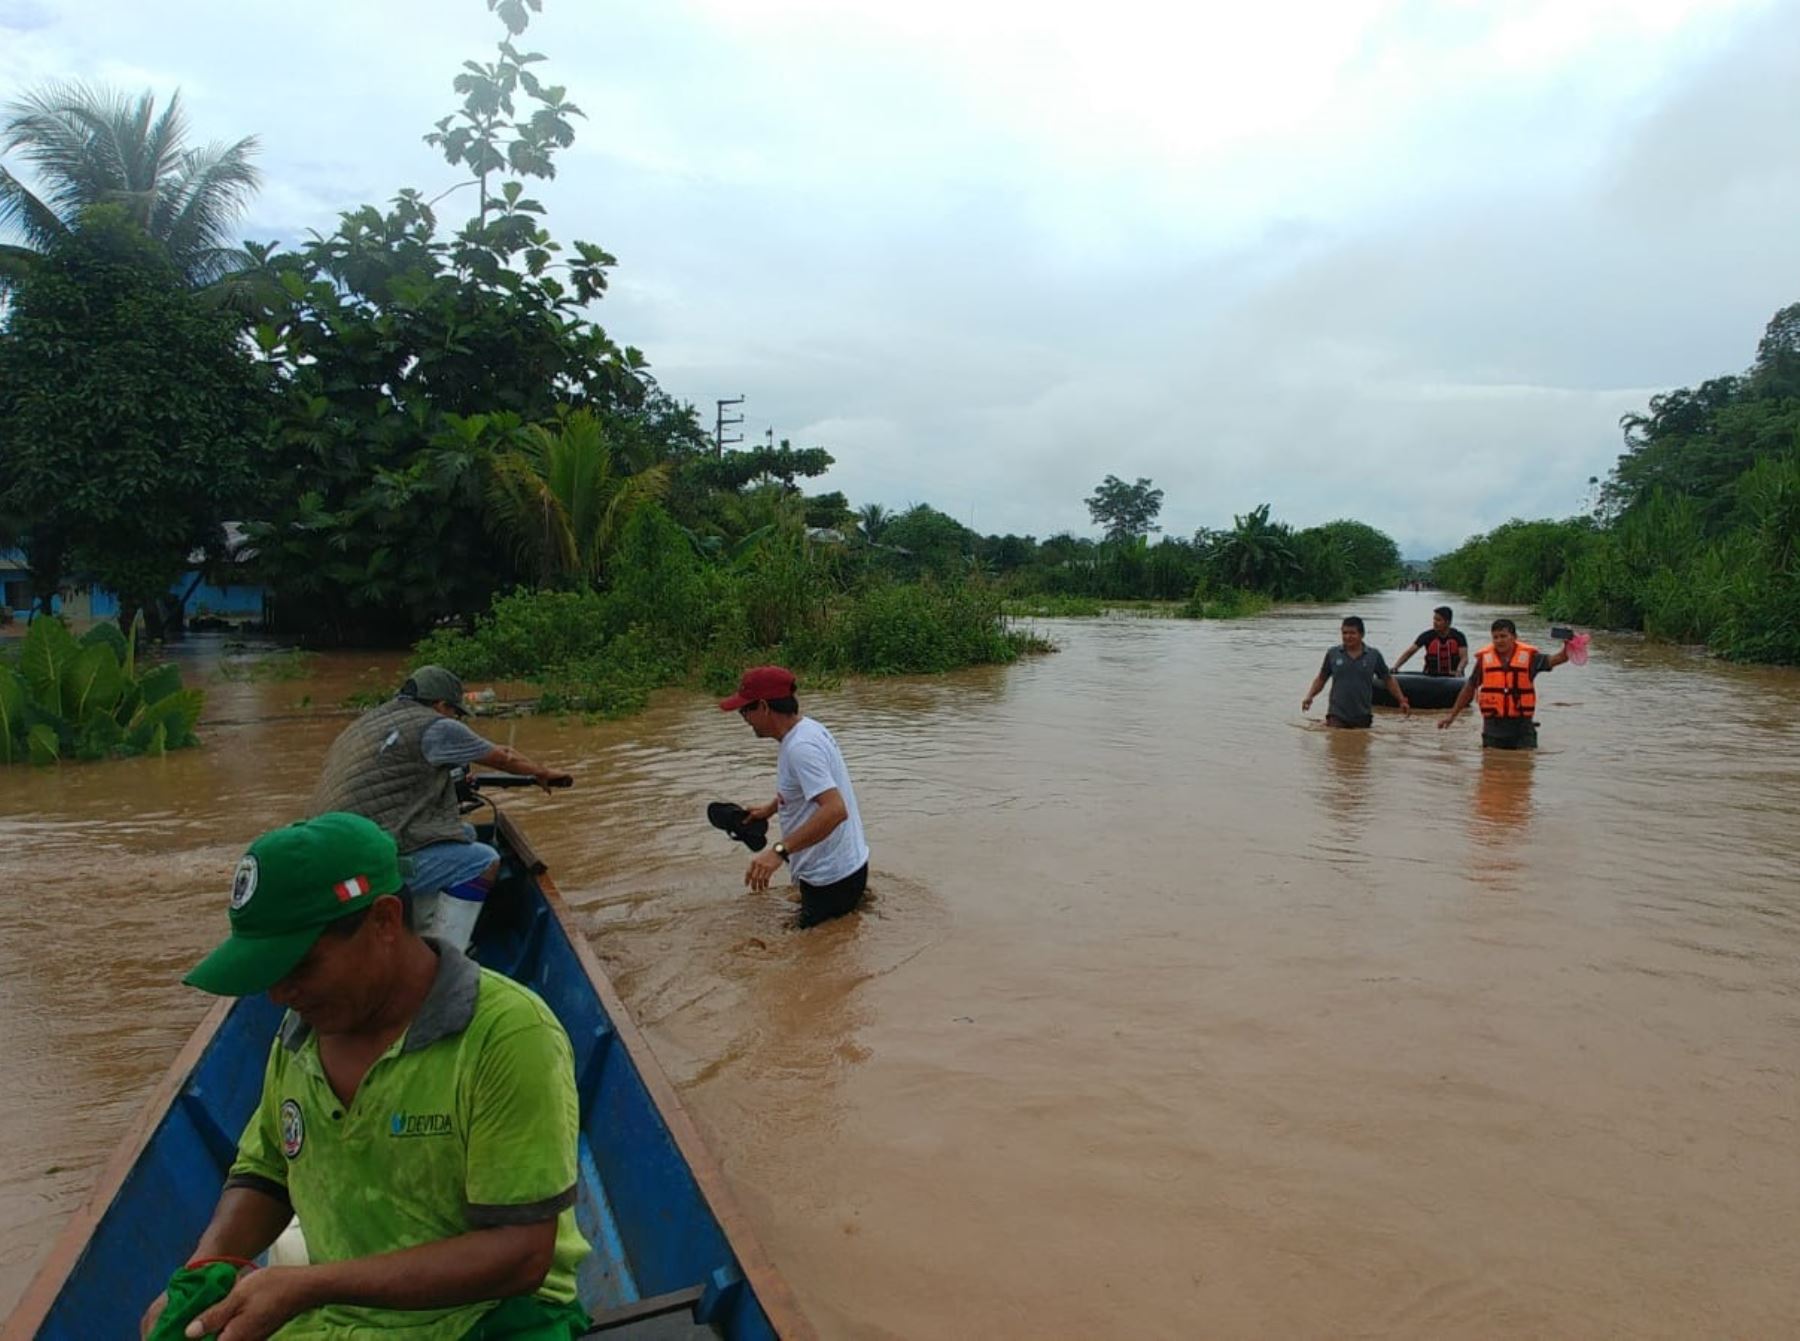 Lluvias intensas provocan un alud y desborde de dos ríos en la provincia de Oxapampa, en la selva de Pasco, informó el COER. Foto: ANDINA/difusión.